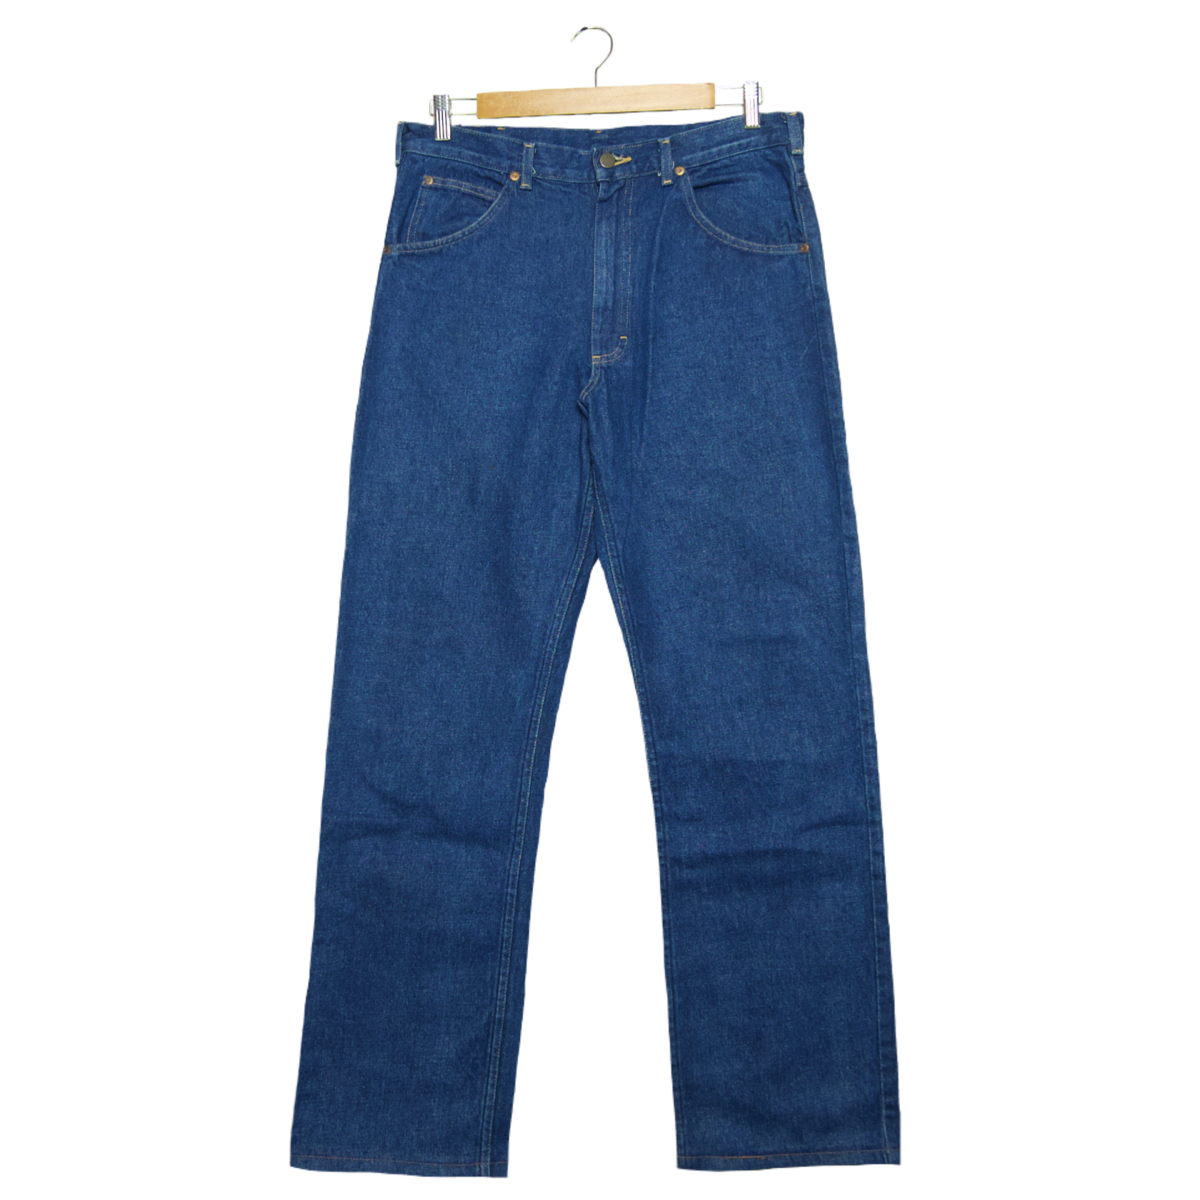 【lee riders】vintage used clothing straight denim jeans indigo ...